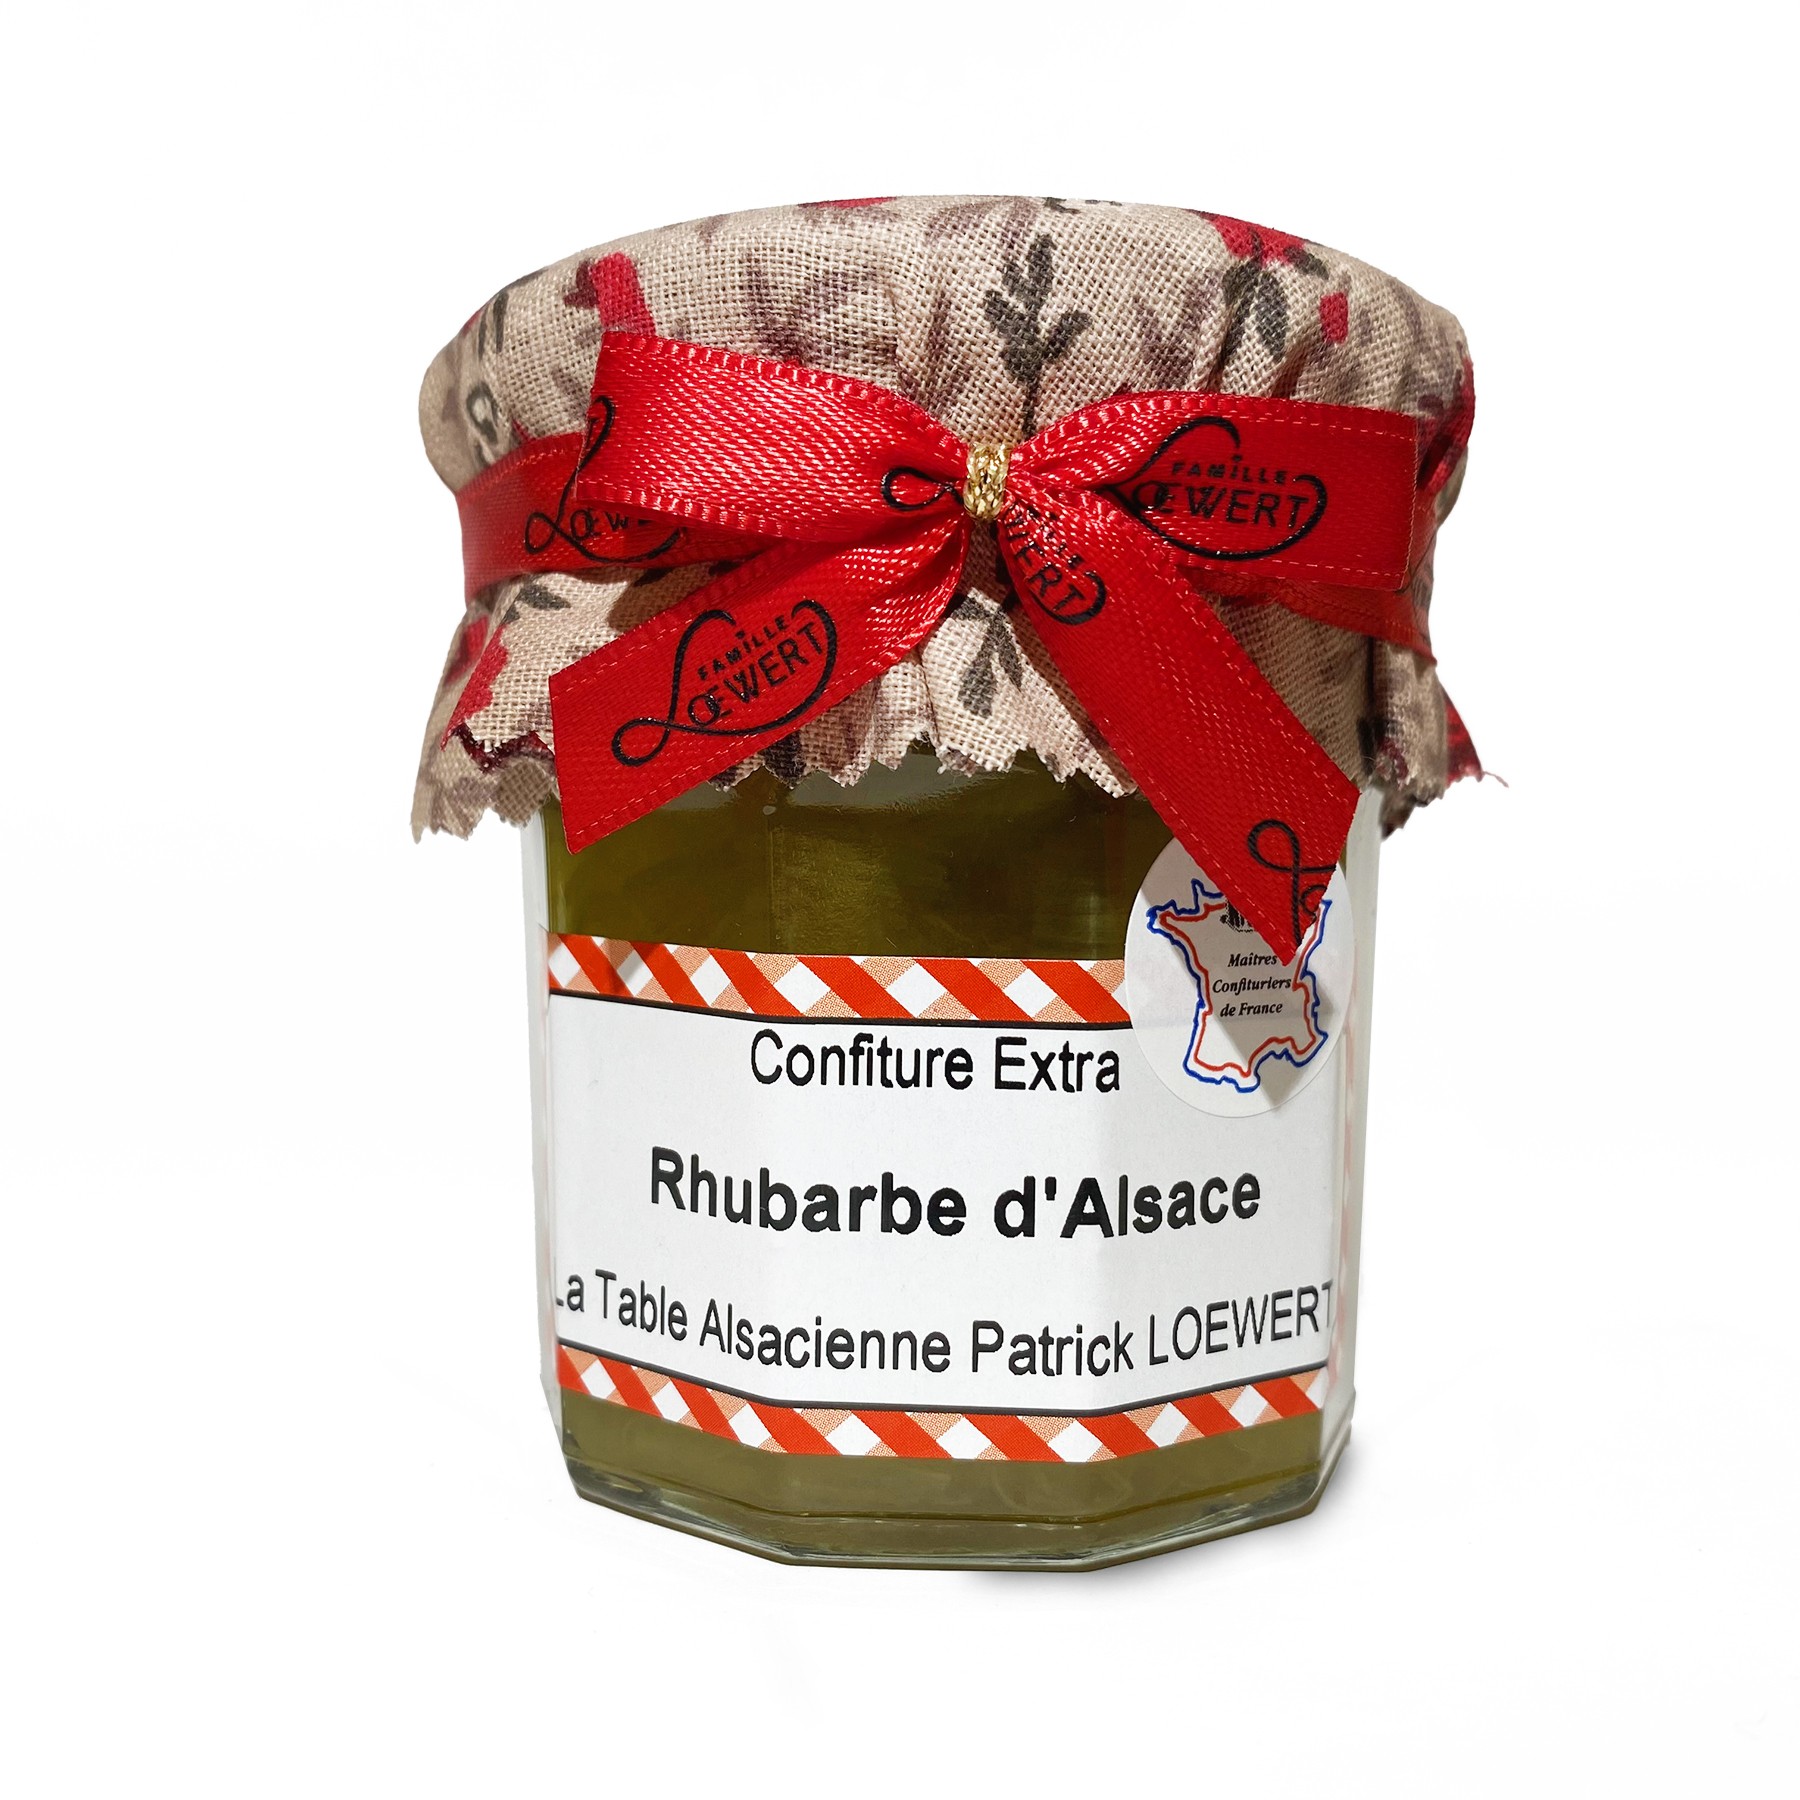 Rhubarbe d’Alsace